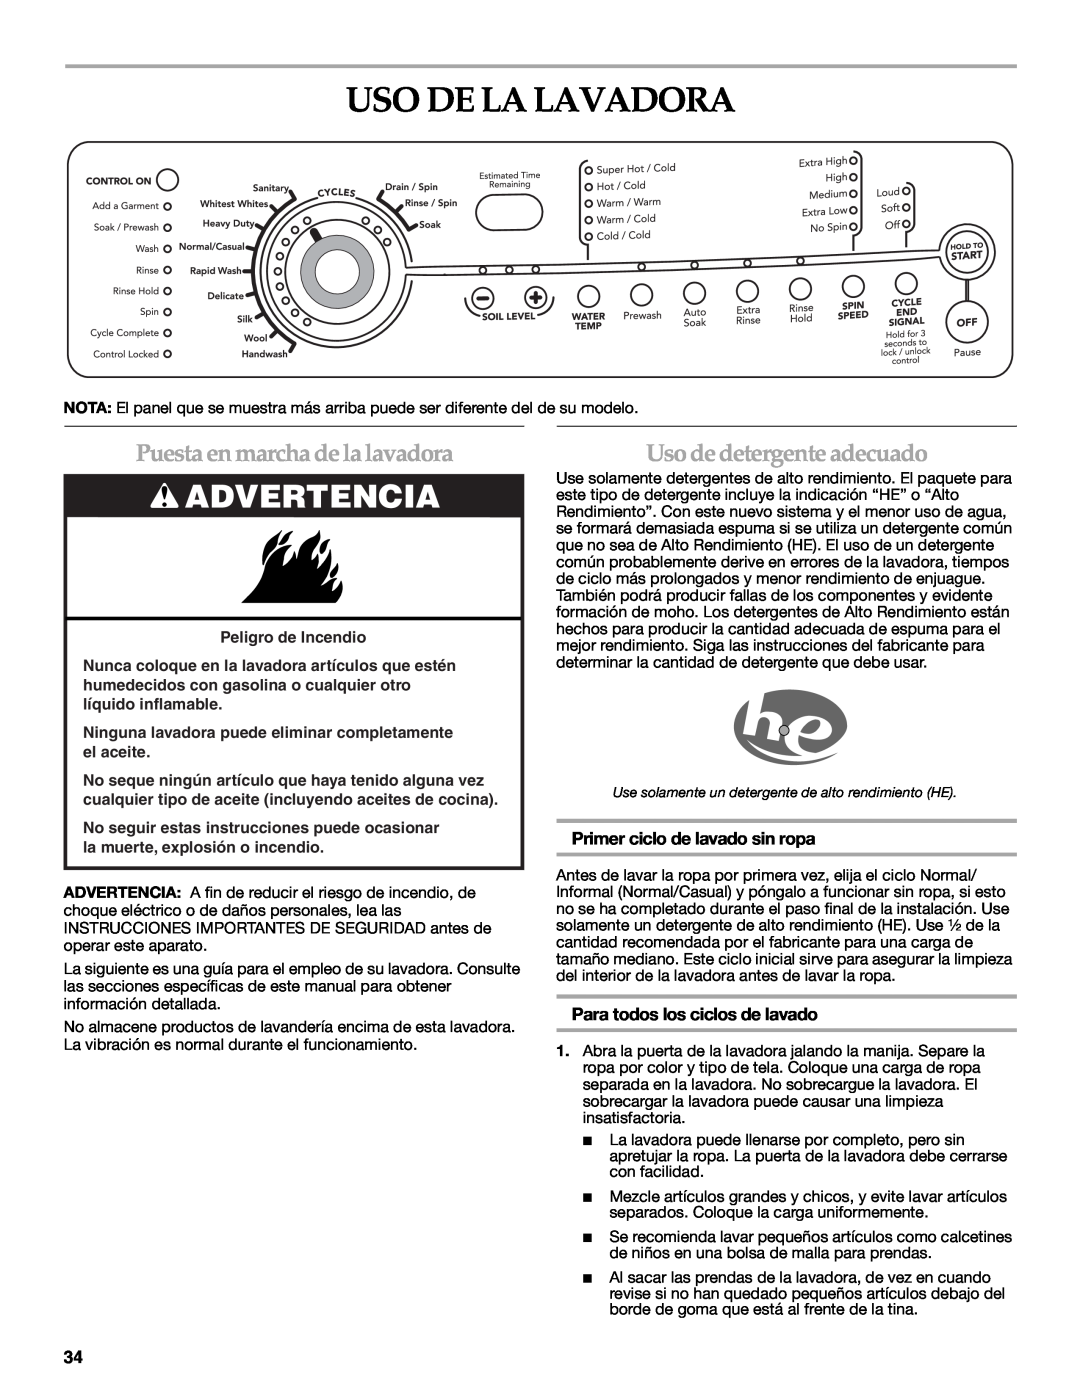 Maytag 8182969 manual Uso De La Lavadora, Puesta en marcha de la lavadora, Uso de detergente adecuado, Peligro de Incendio 